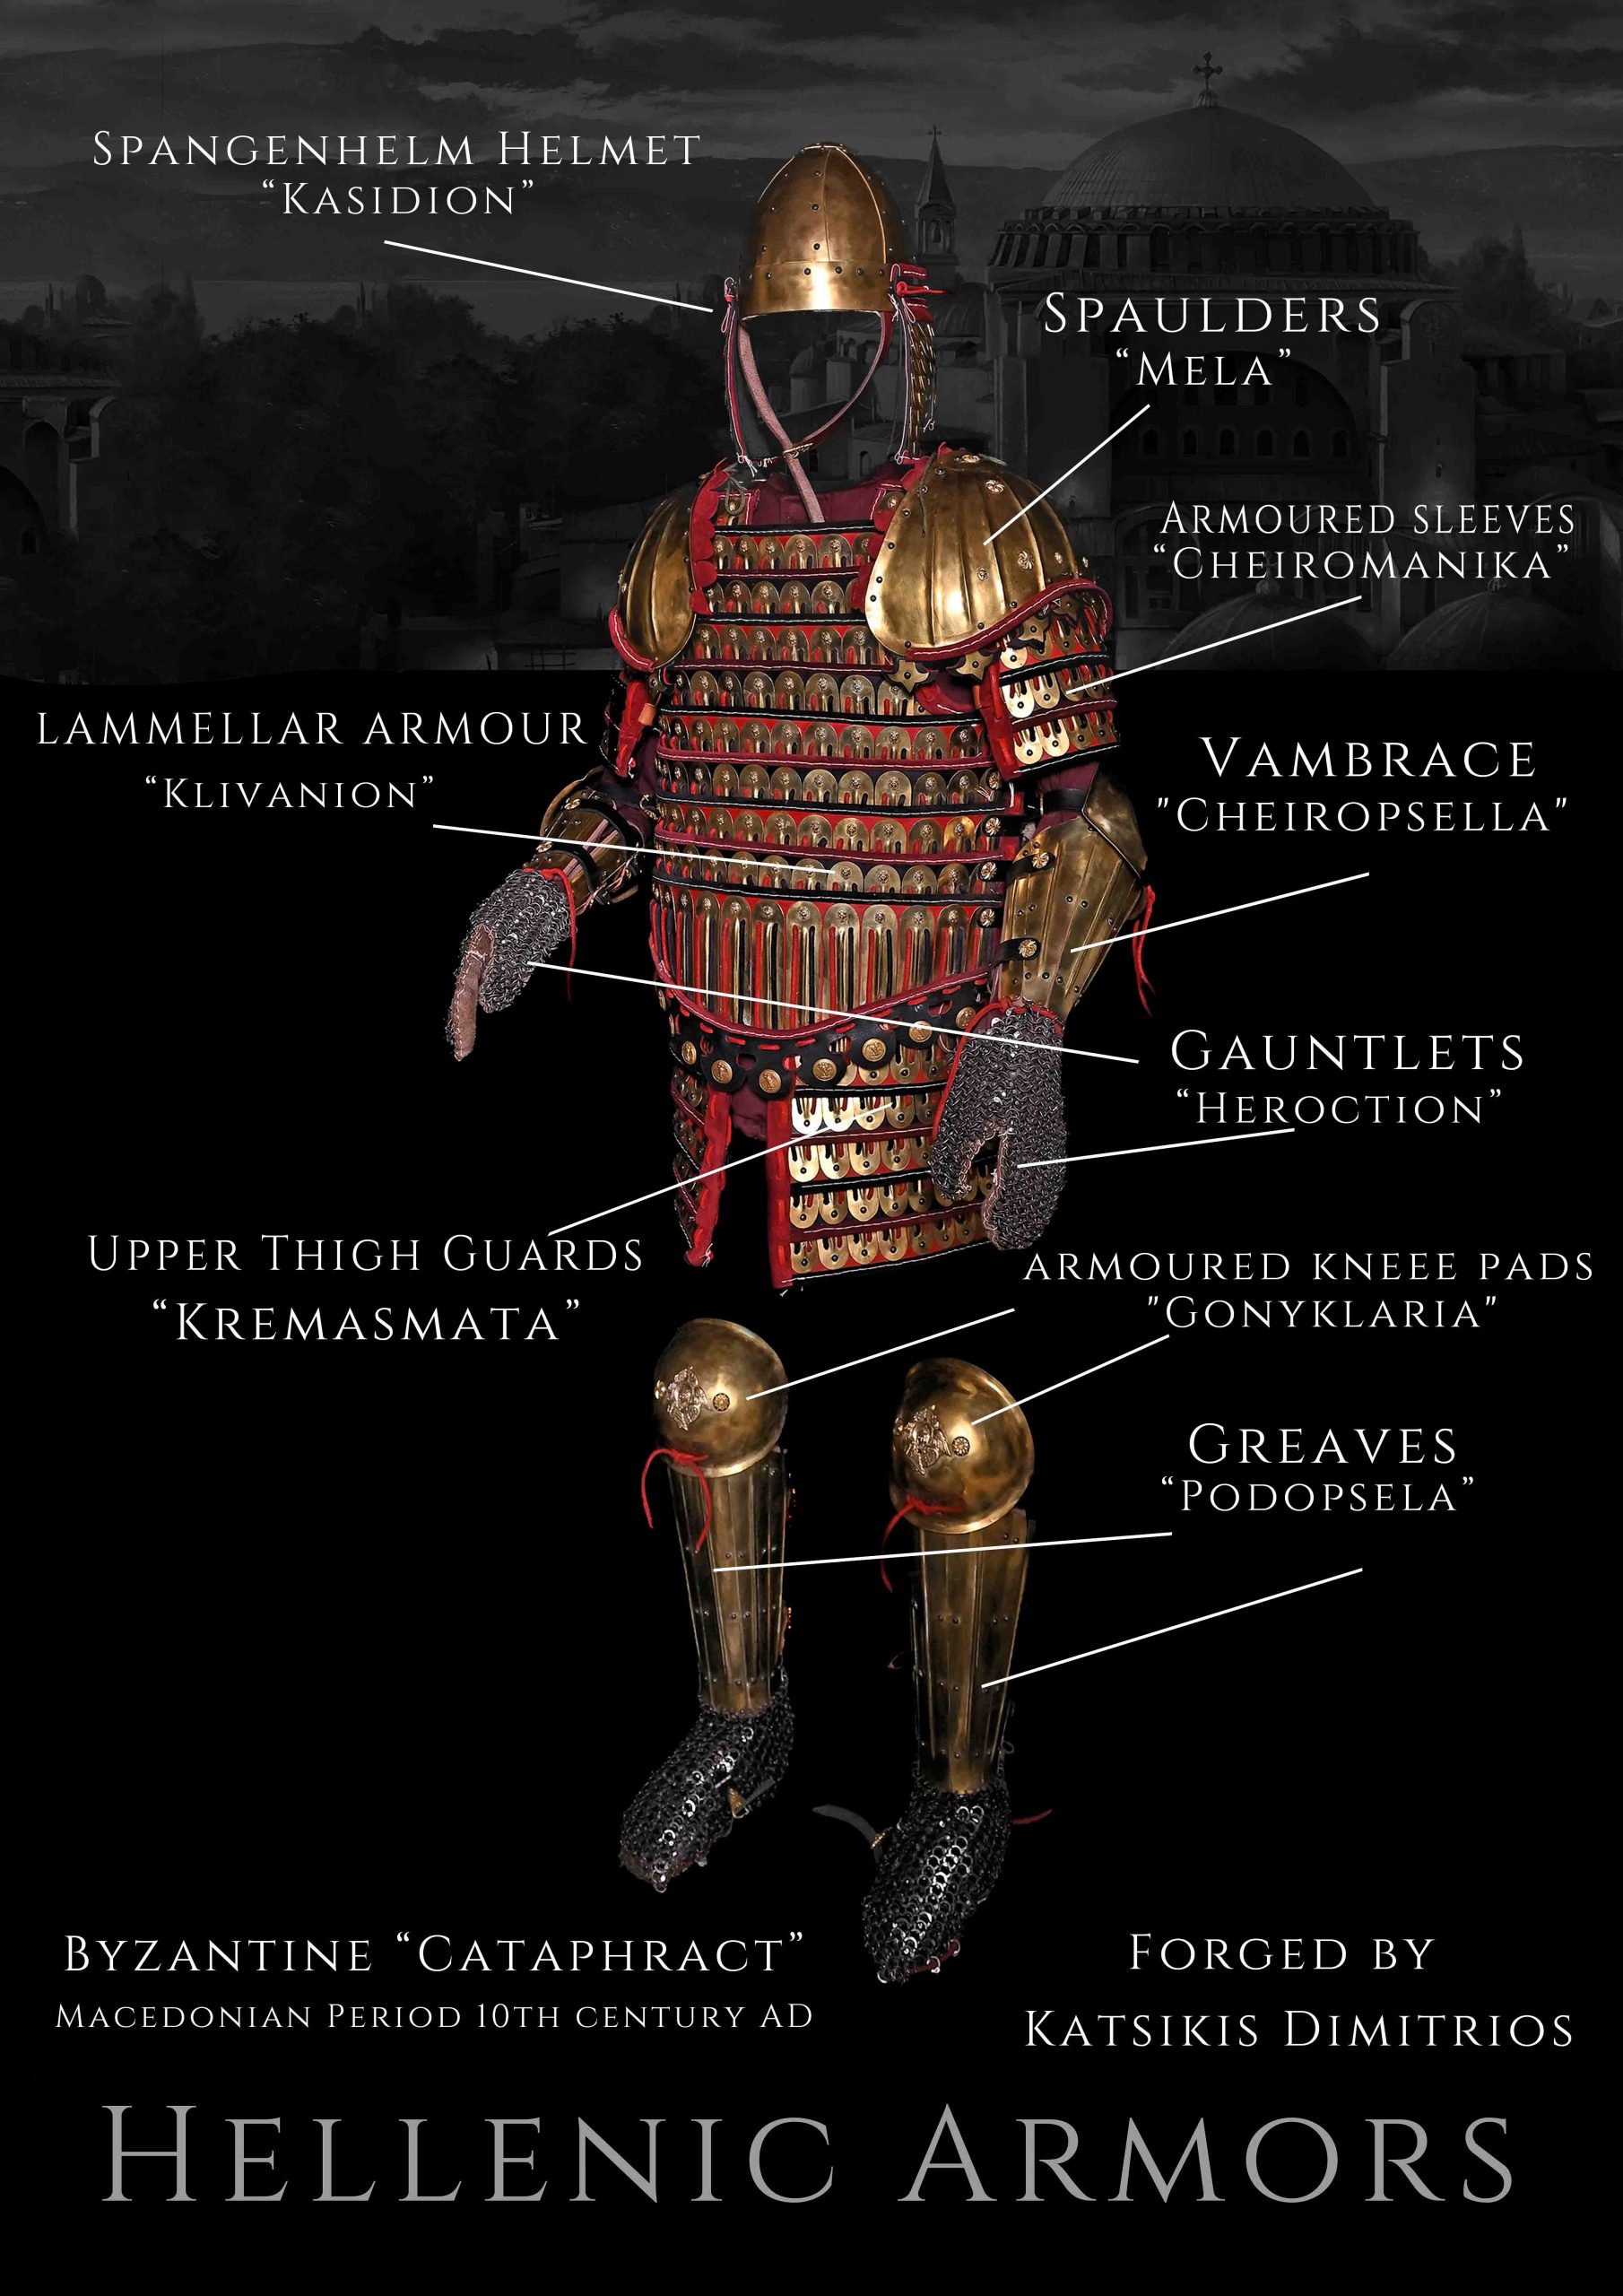 Ιωάννης Τσιμισκής. Αυτοκράτωρ Ρωμαίων ( 969-976μ.Χ)